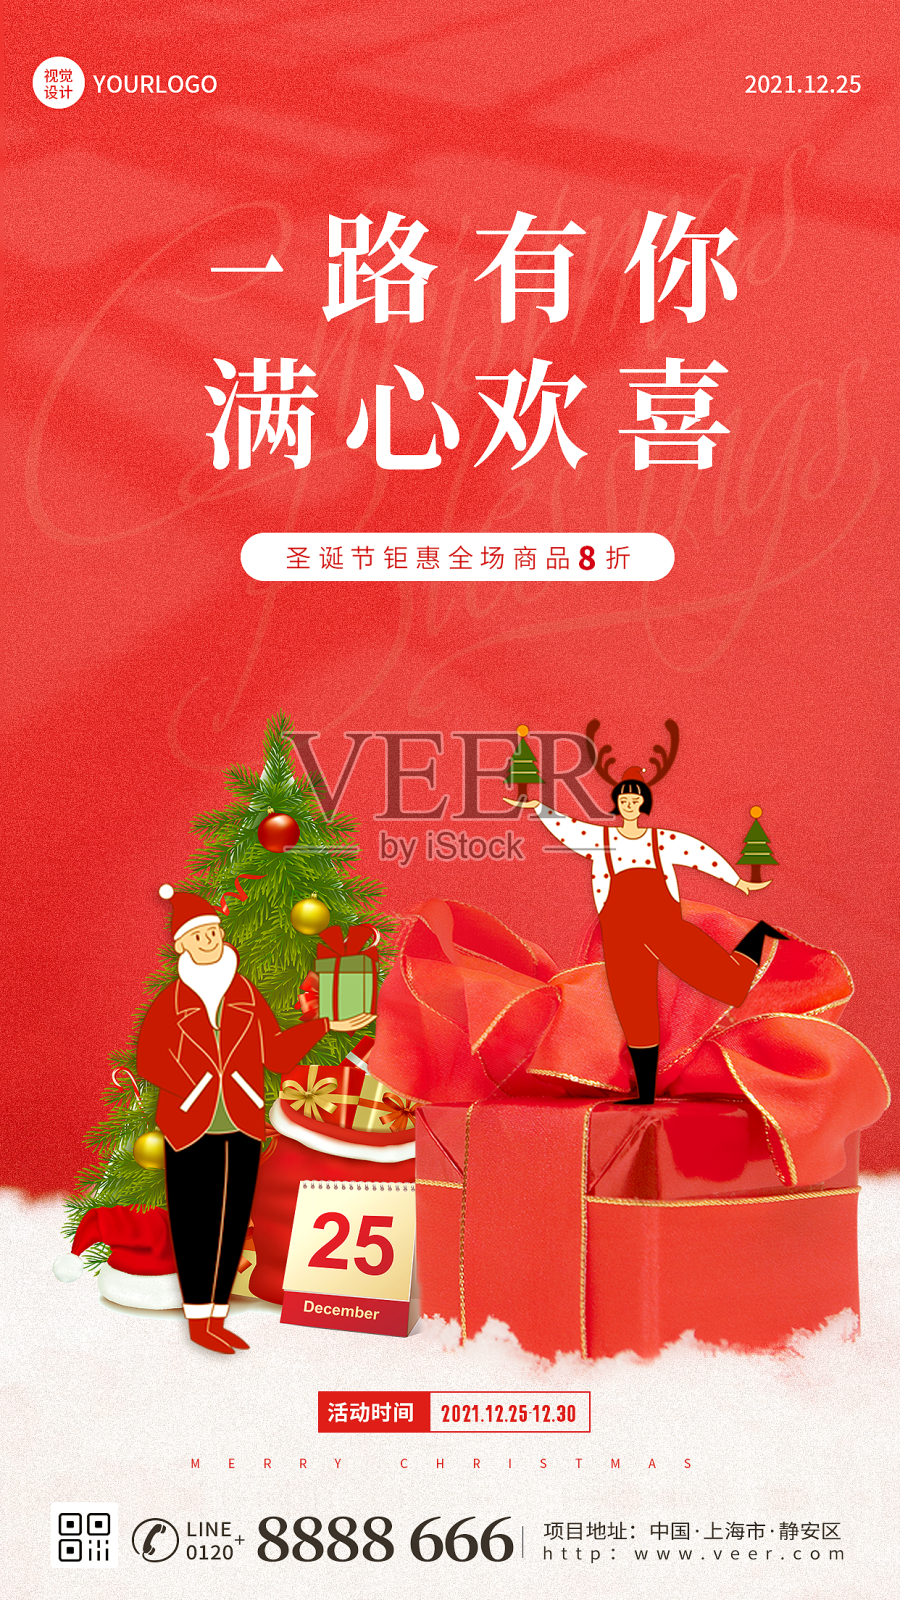 圣诞节促销宣传红色简约大气手机海报设计模板素材